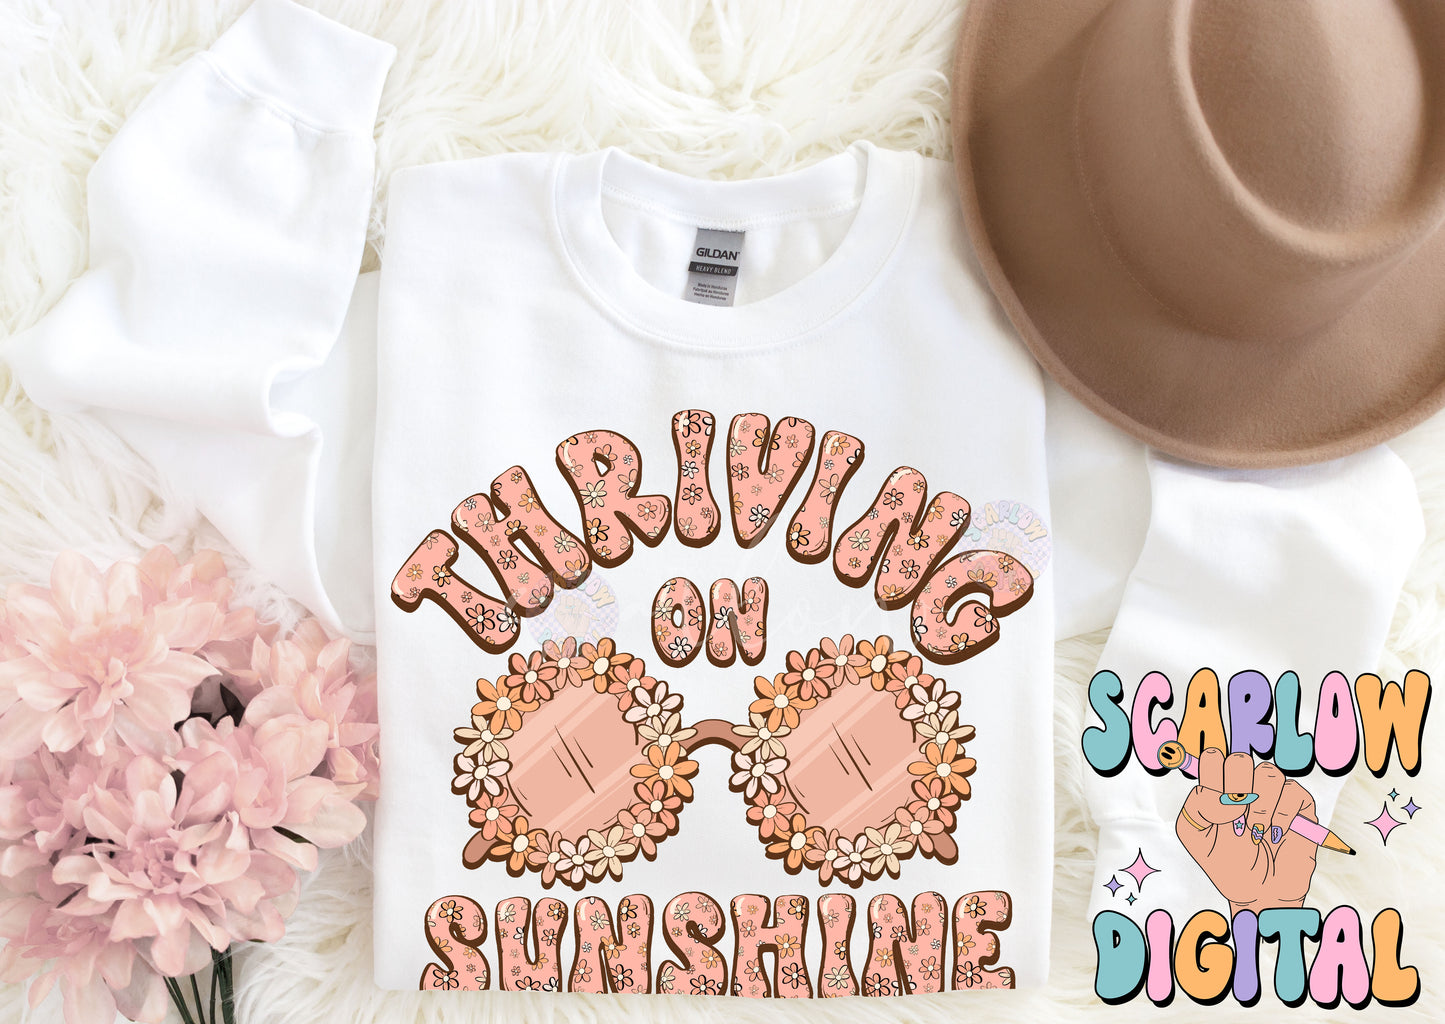 Thriving on Sunshine PNG-Summer Sublimation Digital Design Download-flower sunglasses png, summertime png, floral png, boho girl png designs